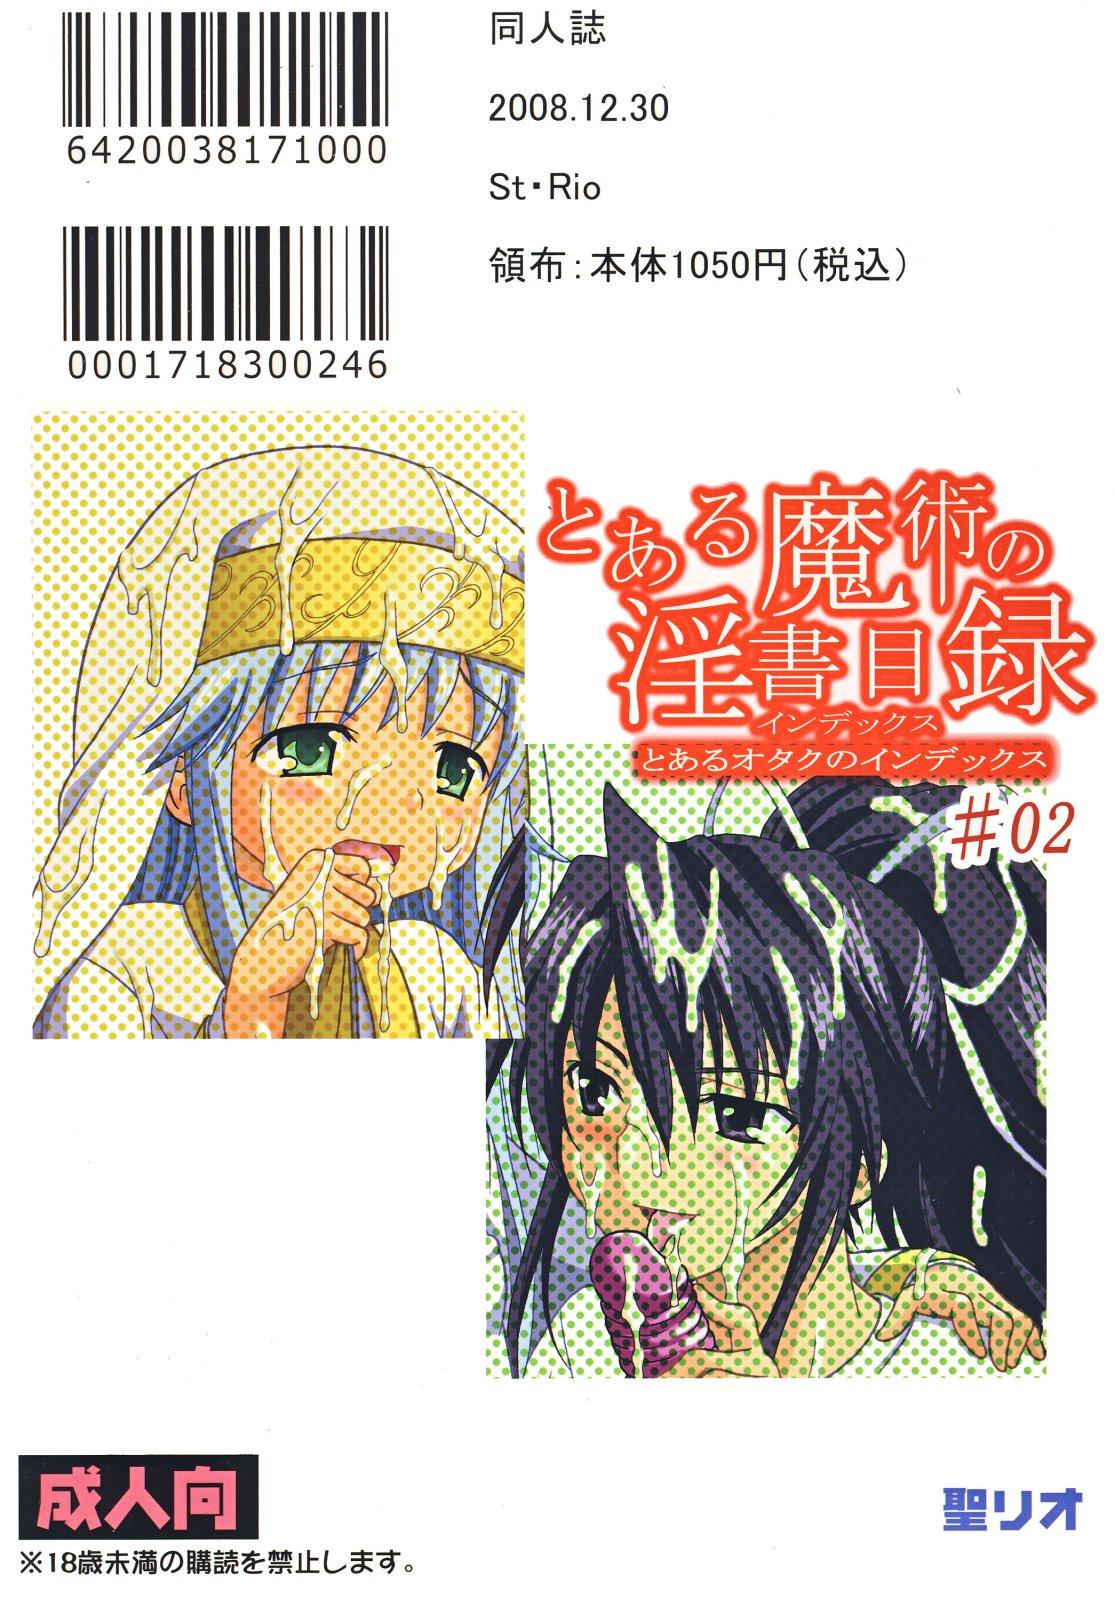 Tinder Toaru Otaku no Index #2 - Toaru majutsu no index Gay Brownhair - Page 52